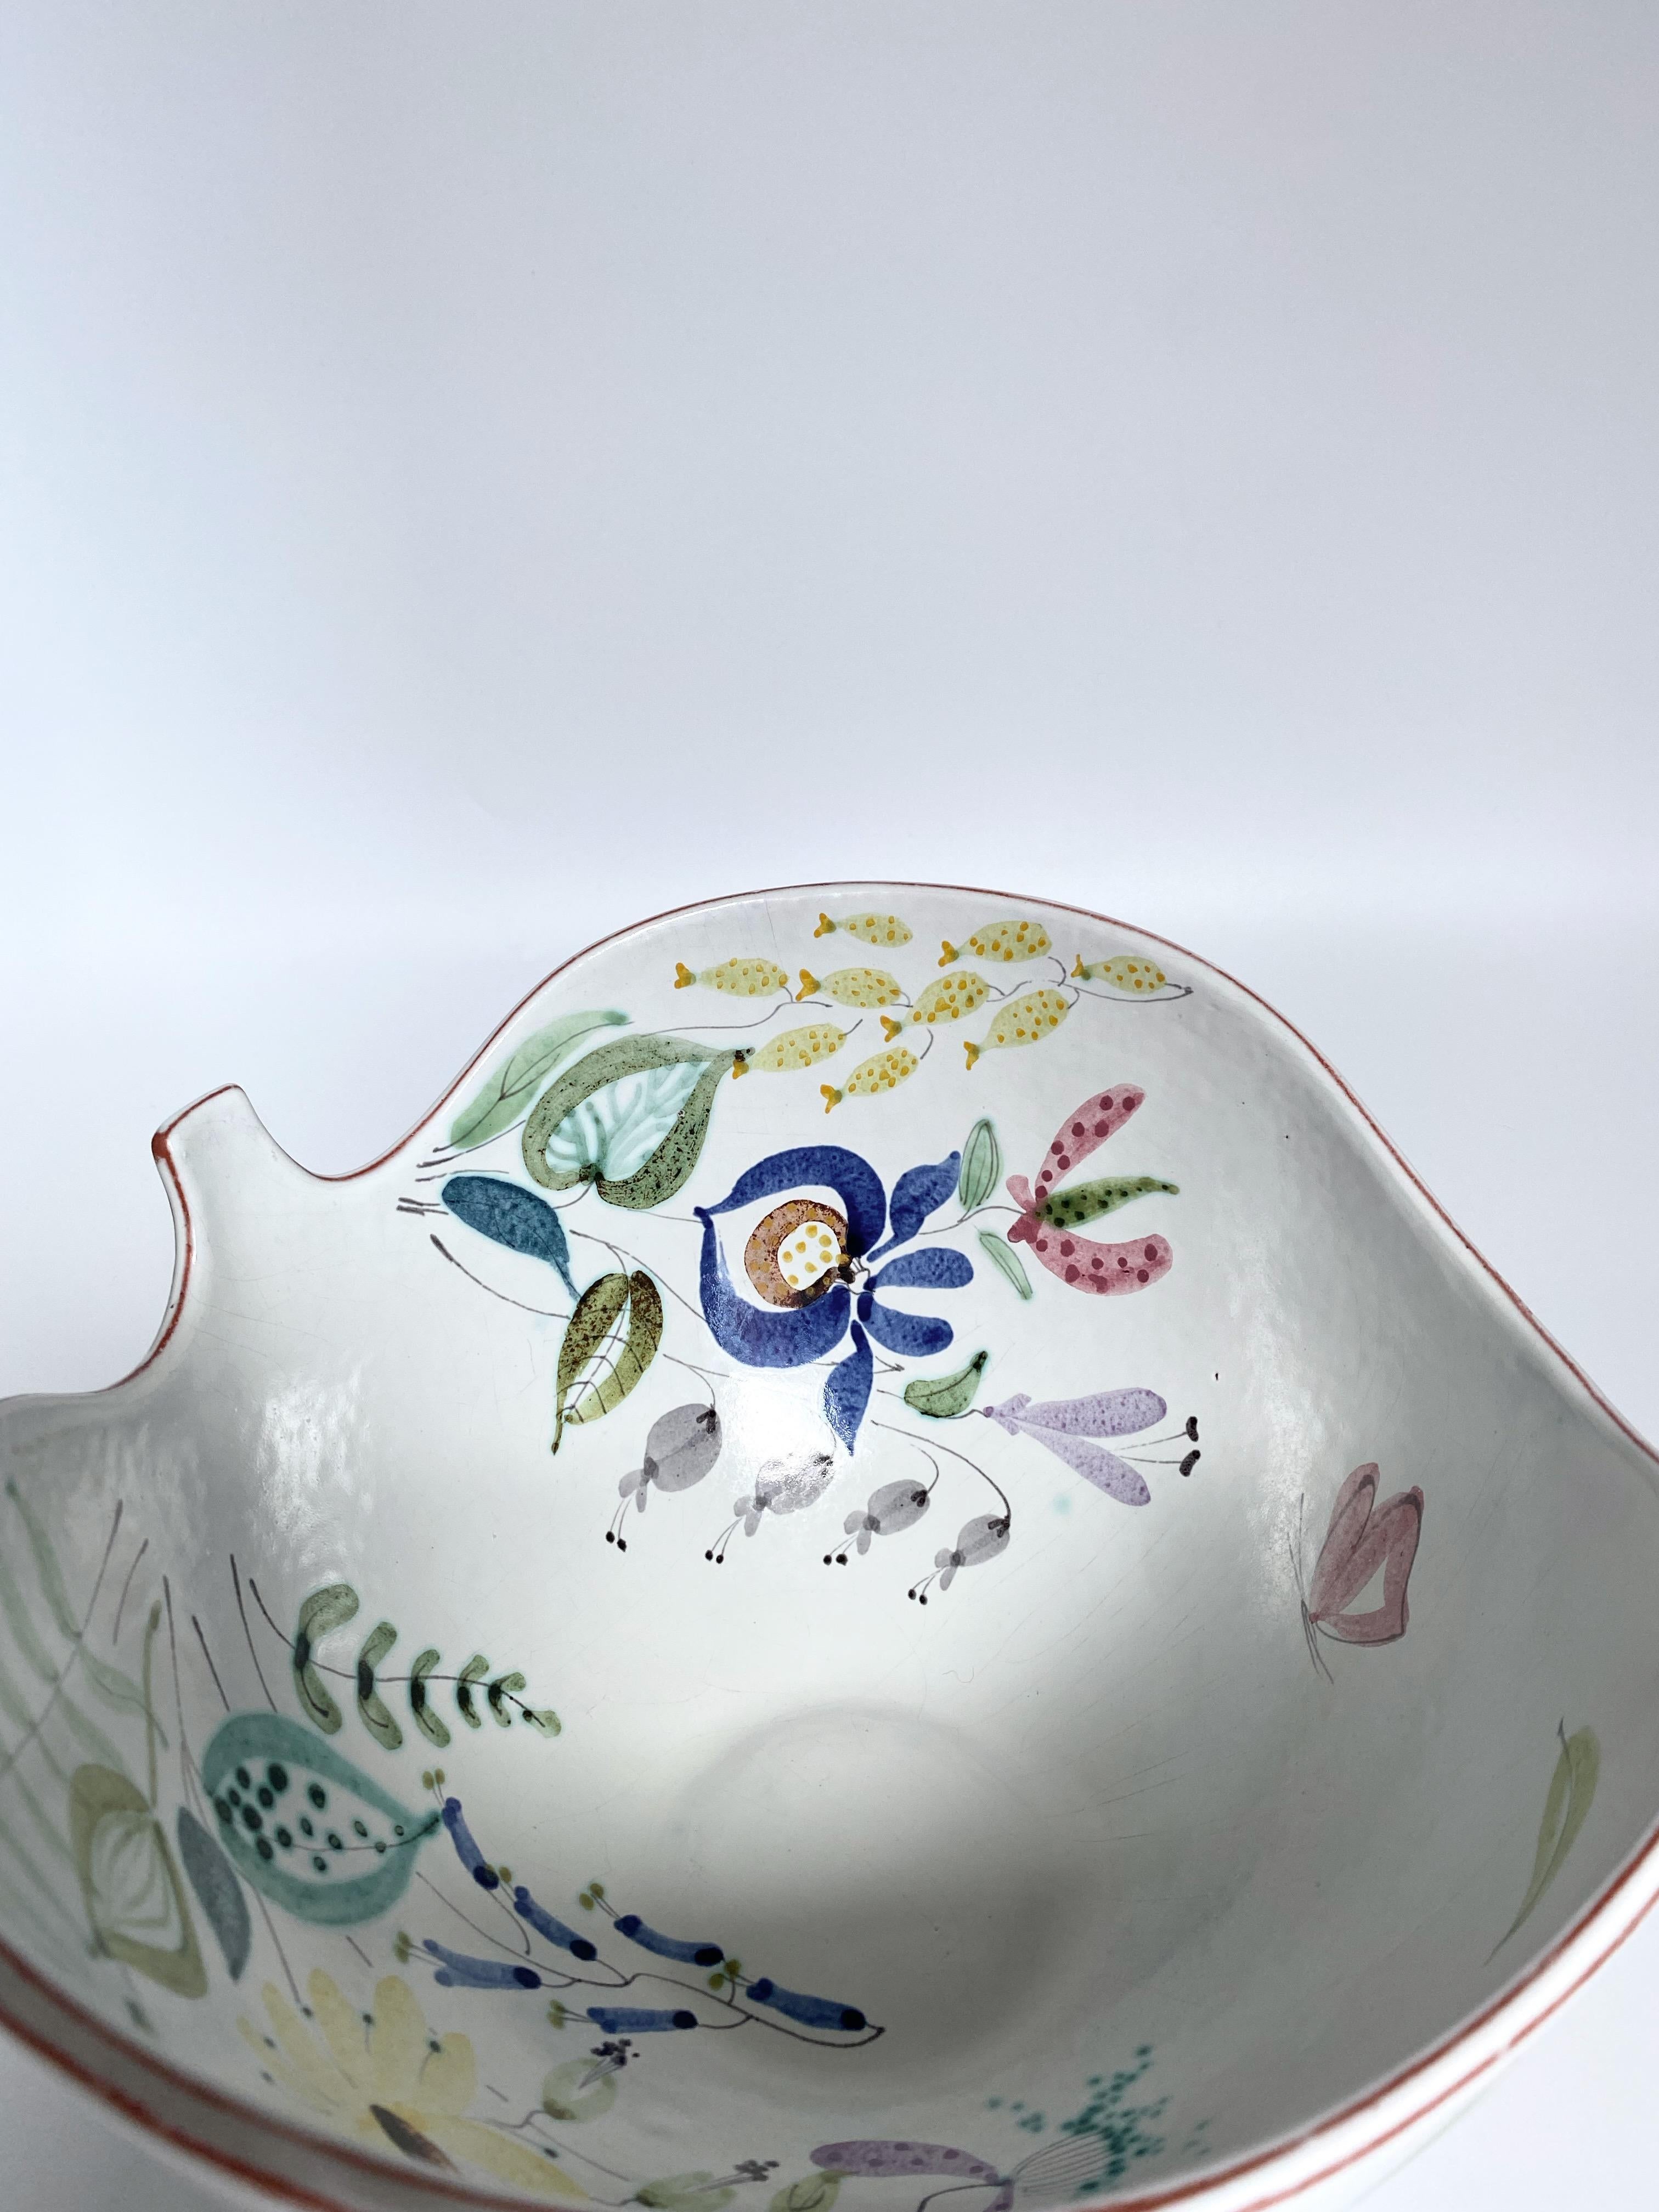 Superbe grand bol et assiette en céramique Faïence de Stig Lindberg pour Gustavsberg. Céramique blanc laiteux présentant une sélection de motifs floraux aux couleurs vives, peints par la faïencière Anita Roi d'après le dessin de Stig Lindberg. En